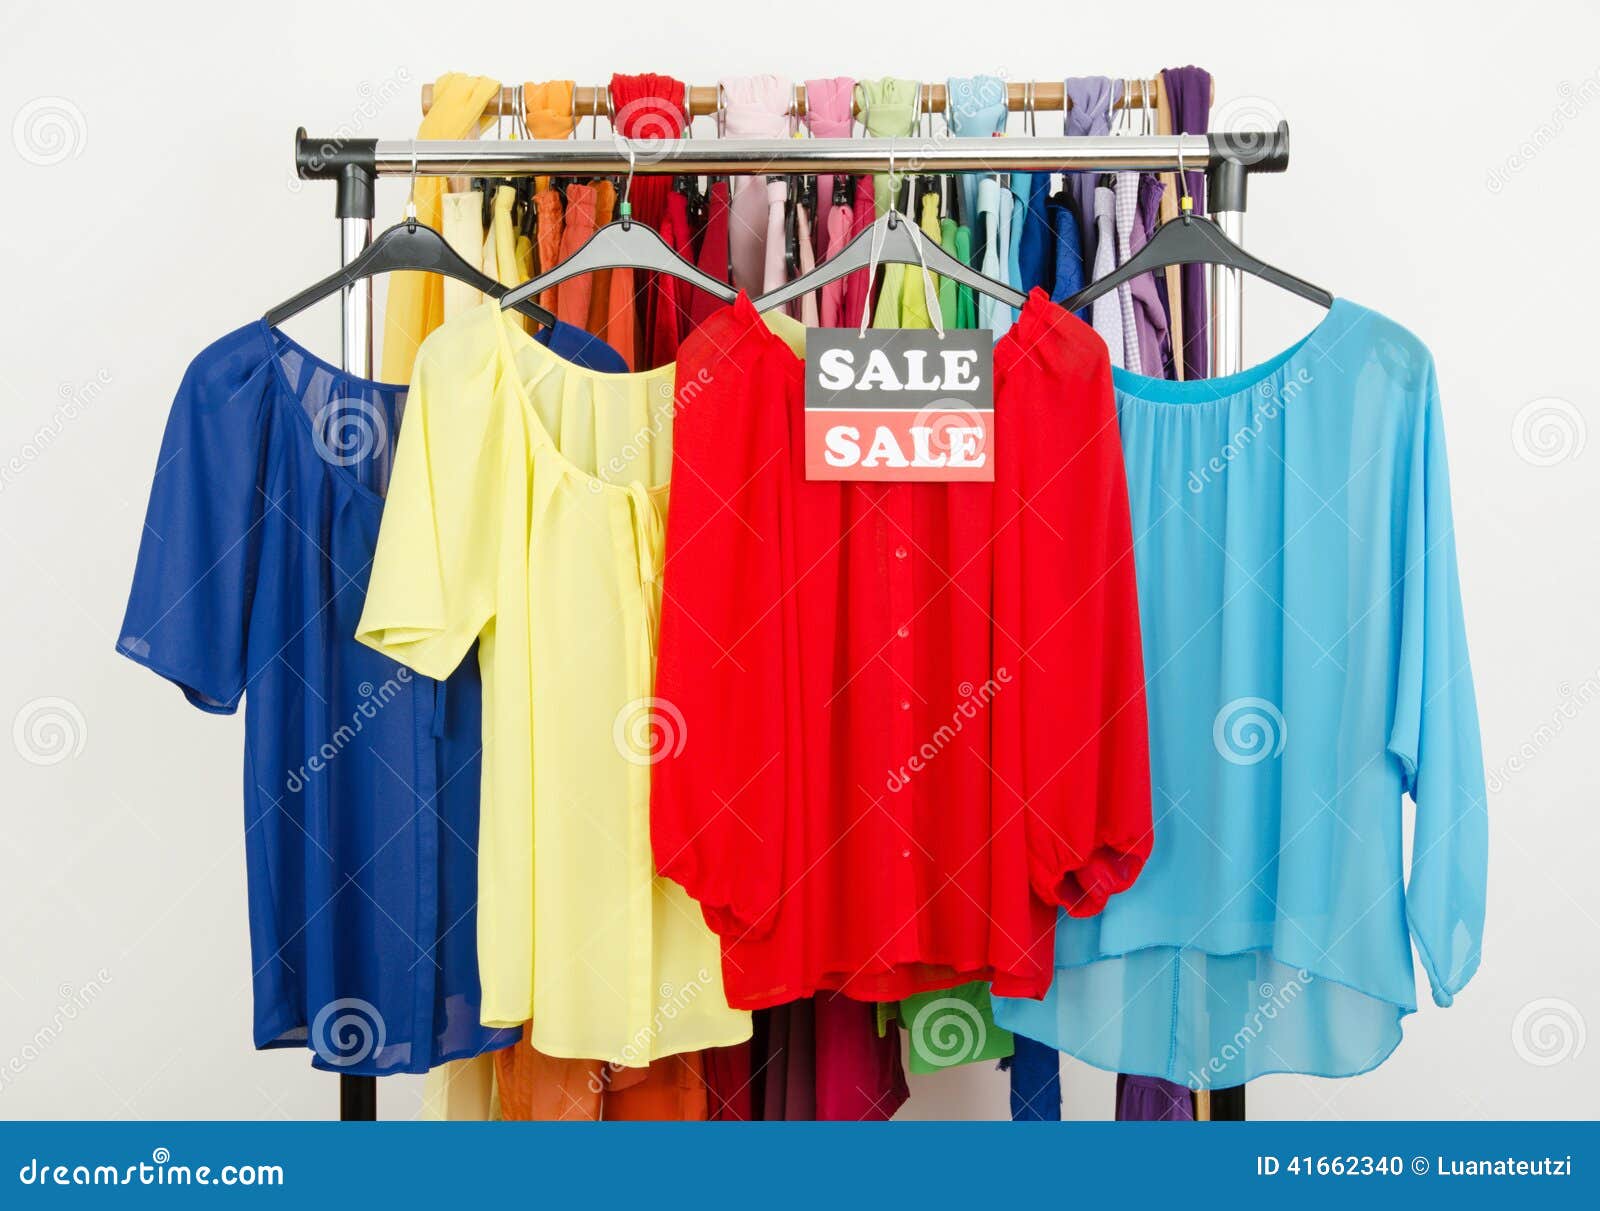 Las Blusas Rojas, Amarillas, Azules Exhibidas En Con La Venta Firman de archivo - Imagen de ocasional, venta: 41662340